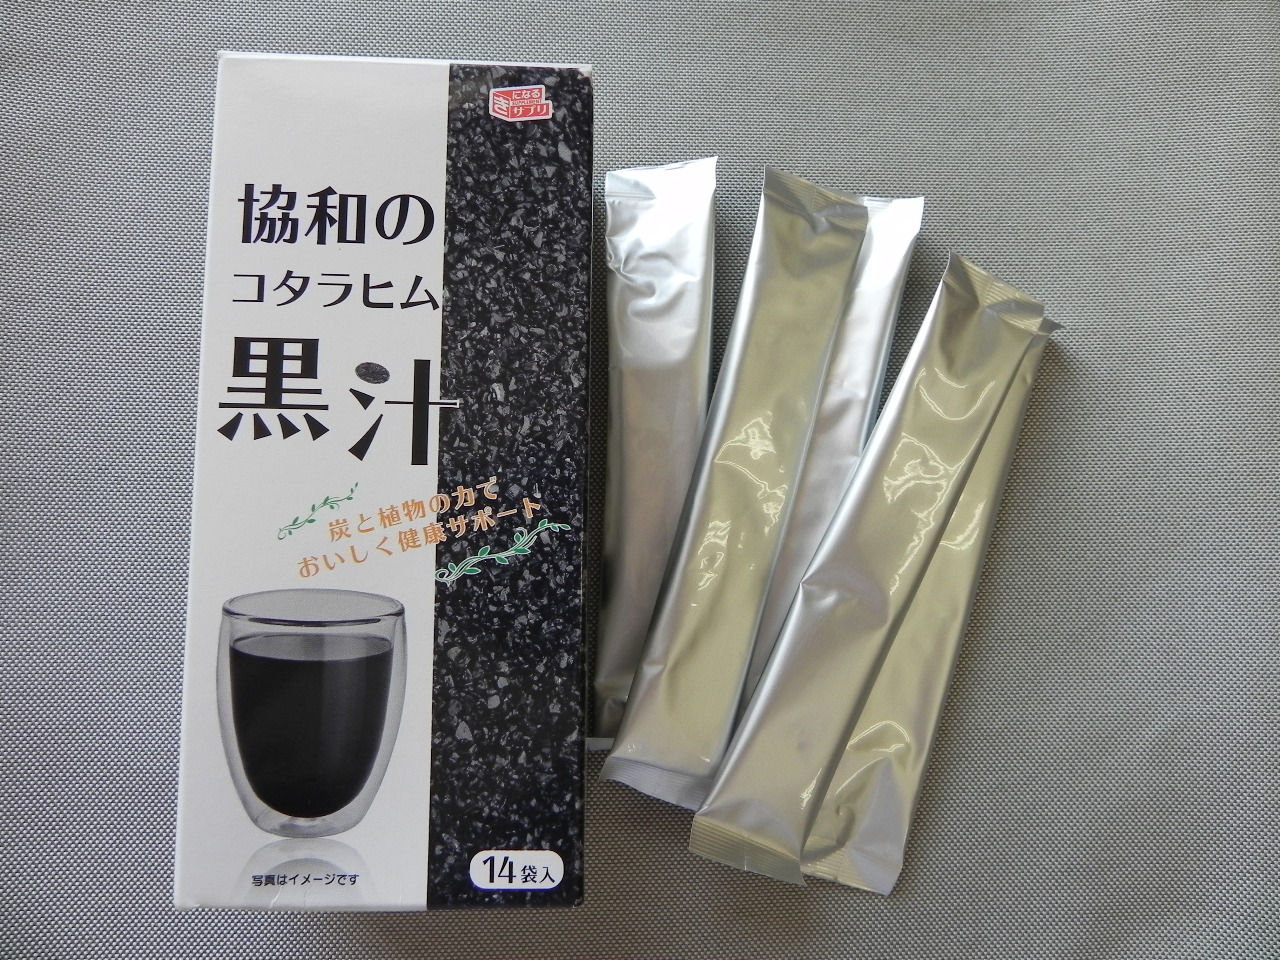 協和のコタラヒム【黒汁】の商品画像